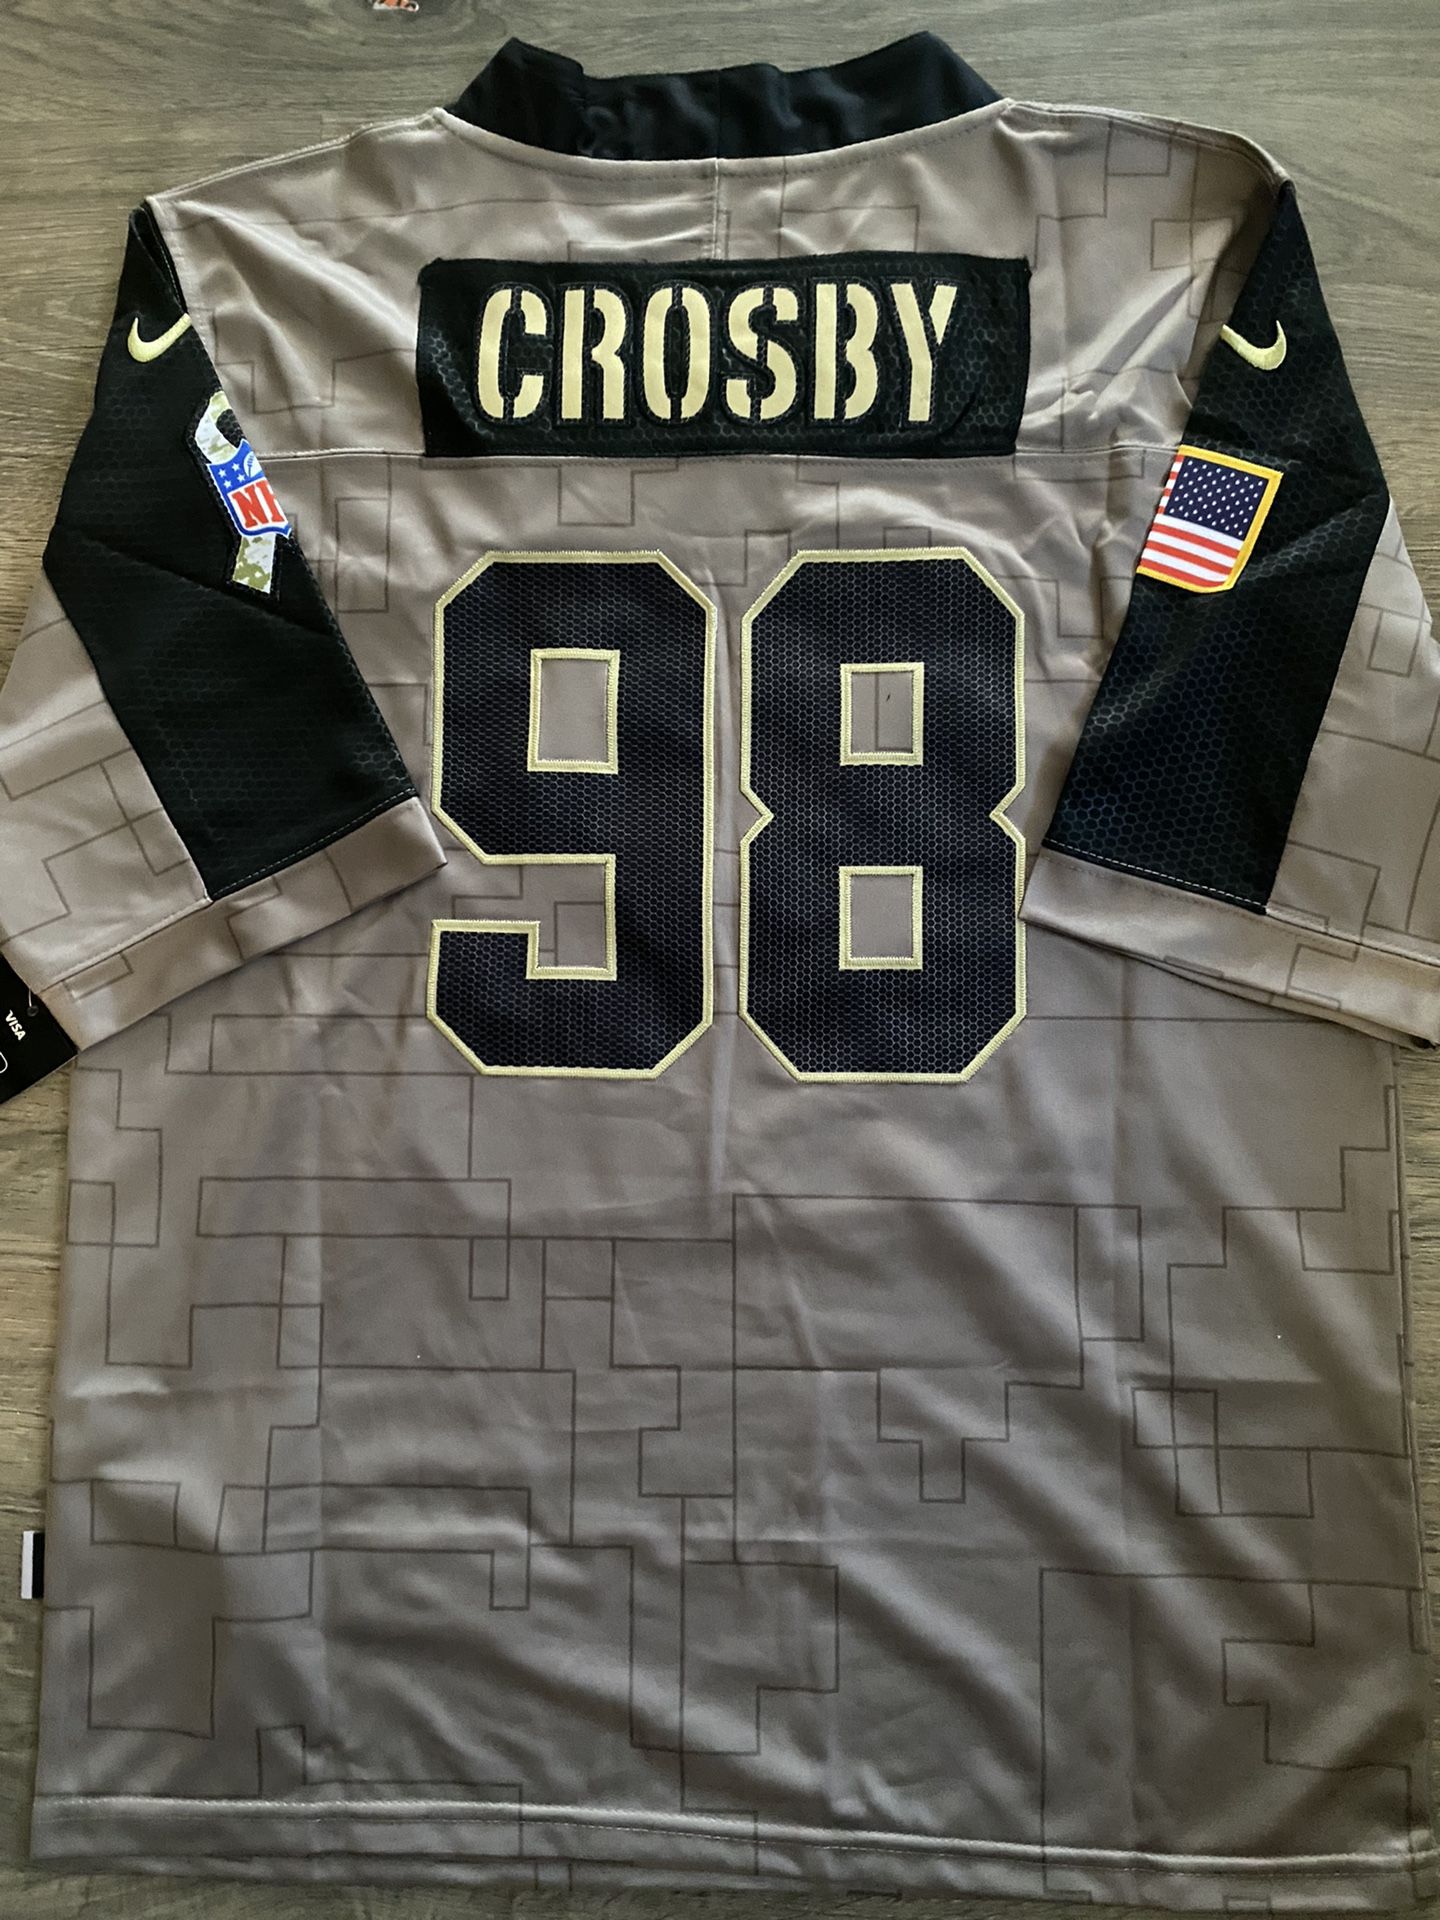 Raiders Maxx Crosby 98 Salute Jersey Mens Small Medium large XL 2X 3X brand new stitched